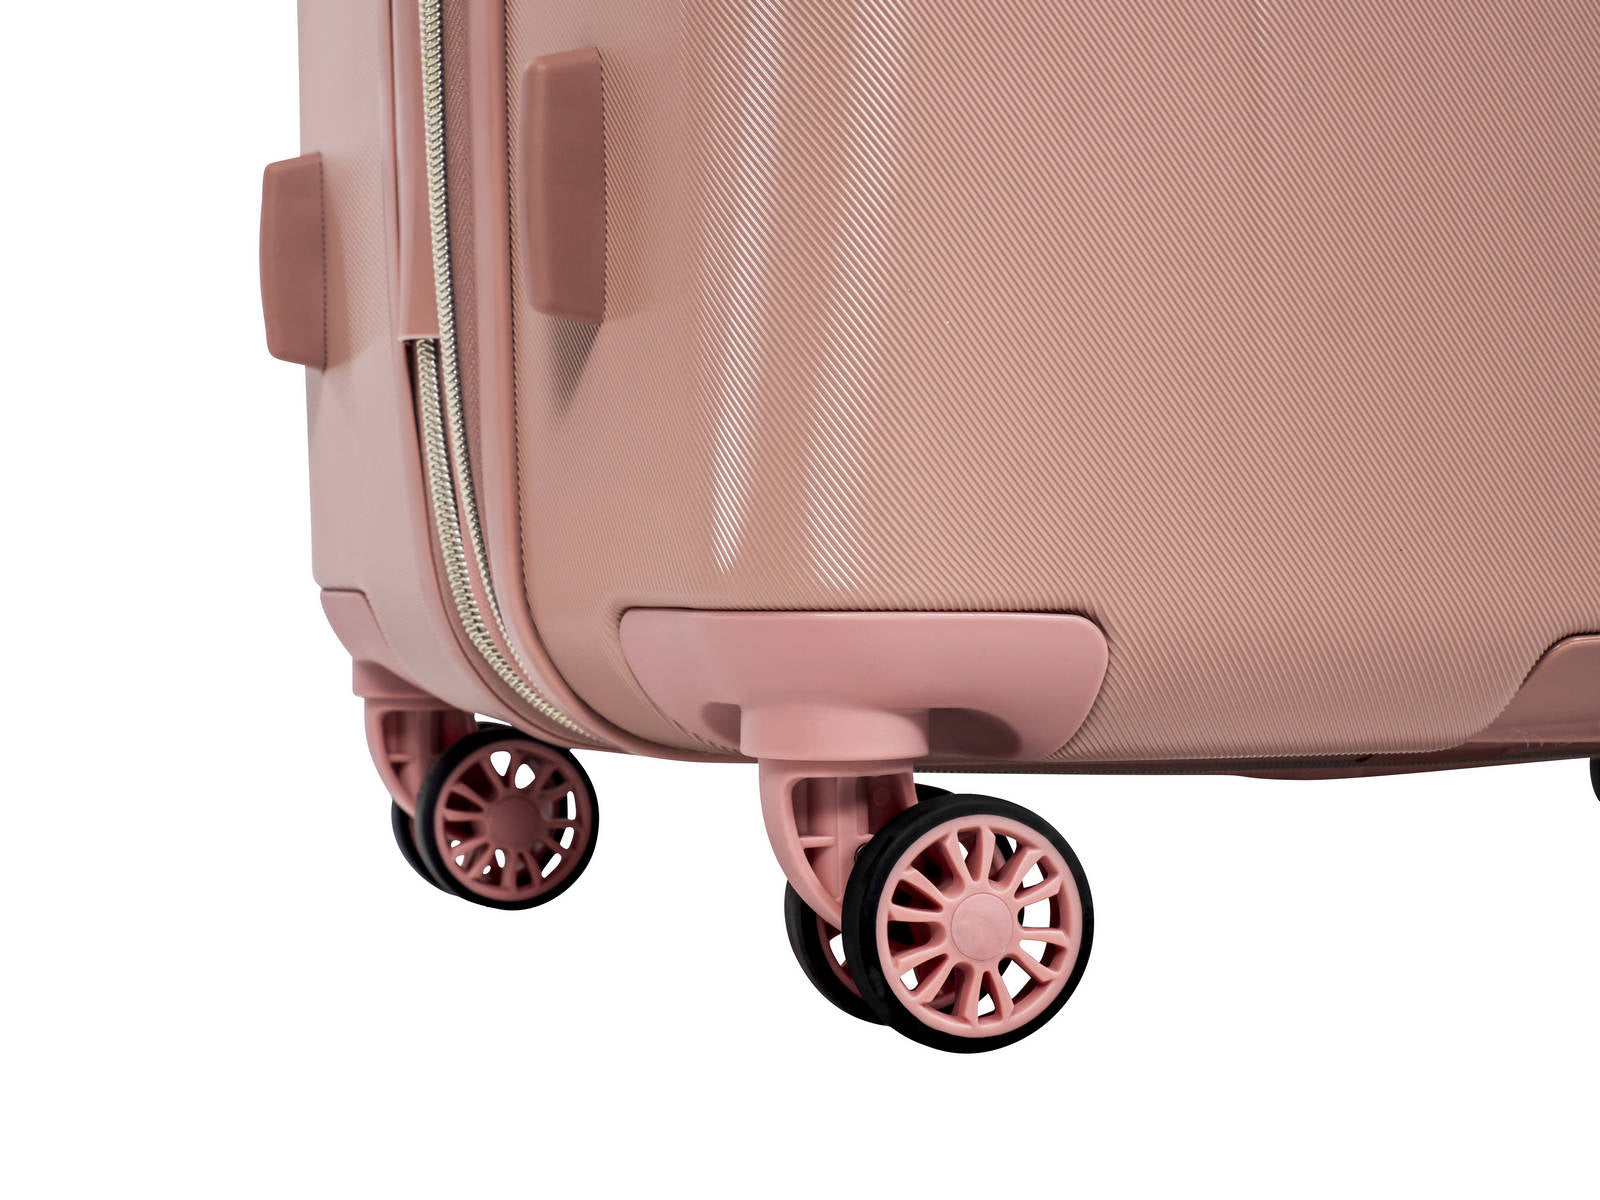 ✮✮בלעדי בישראל✮✮ מזוודה בינונית 24" אופנתית מבית מעצבת העל Donna Karan DKNY דגם SIX FOUR ONE